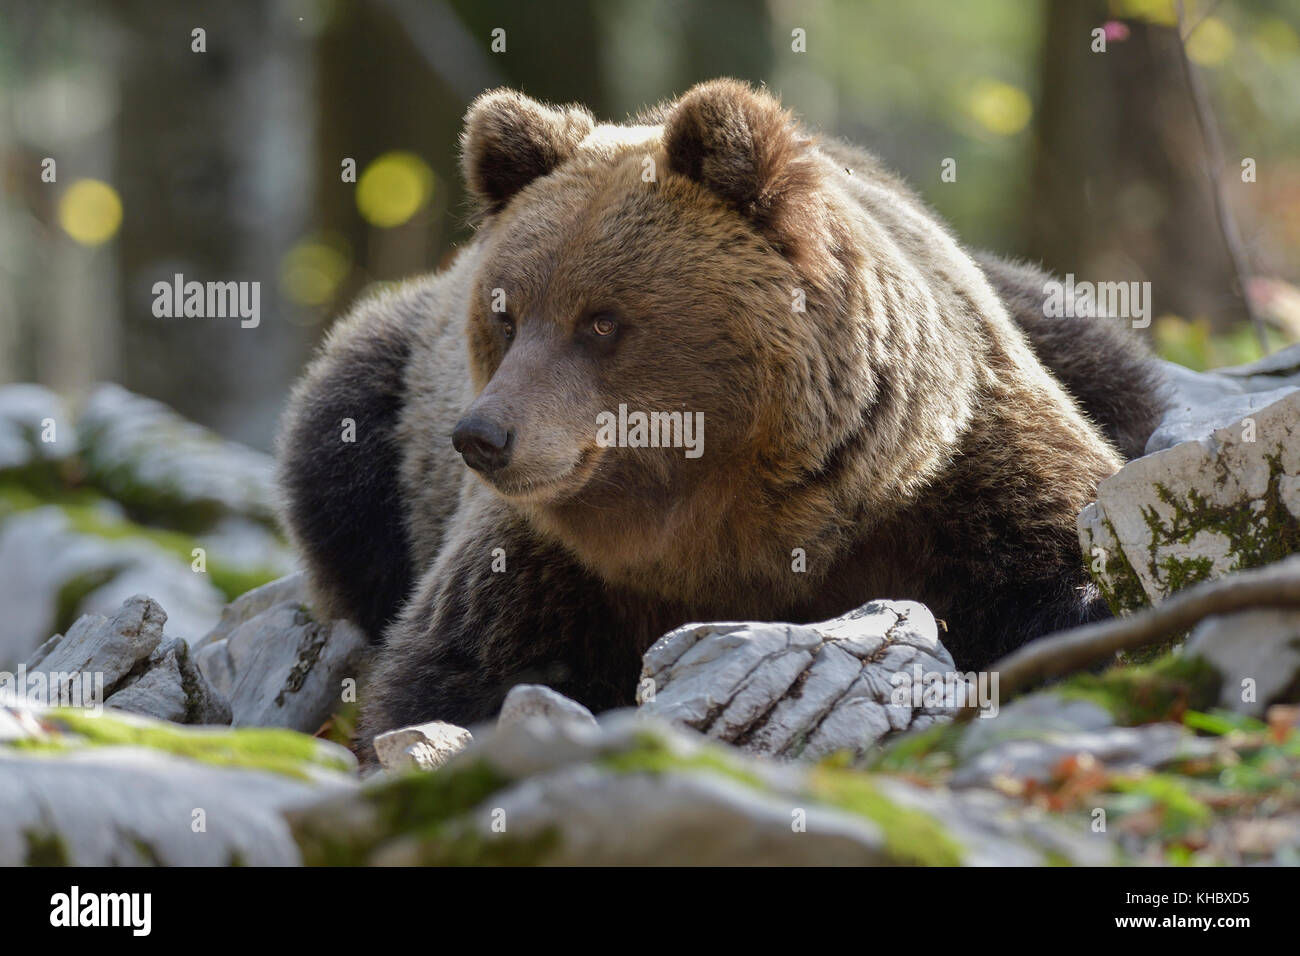 Oso pardo europeo o euroasiático de oso pardo (ursus arctos arctos), el oso en el bosque del karst, Notranjska, eslovenia Foto de stock